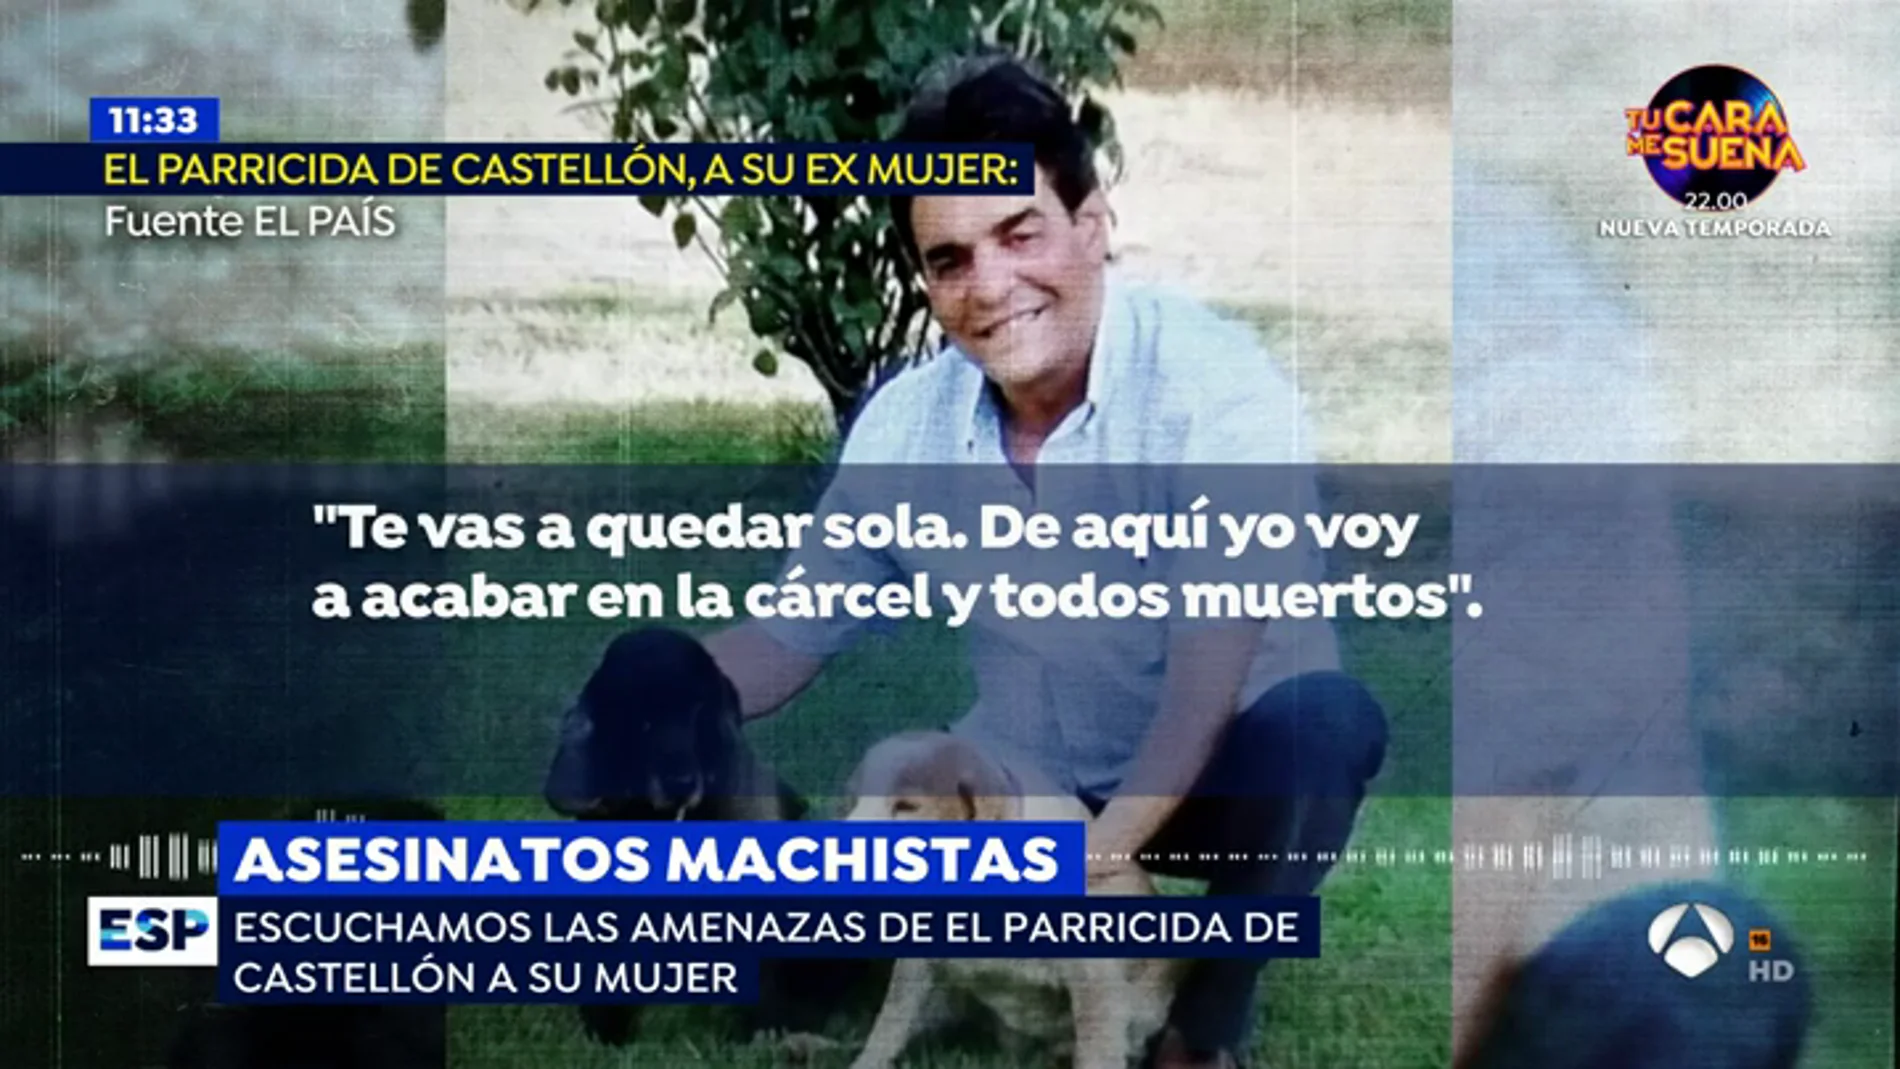 Las amenazas del parricida de Castellón a su exmujer antes de matar a las niñas: "Me voy a cargar lo que más quieres"